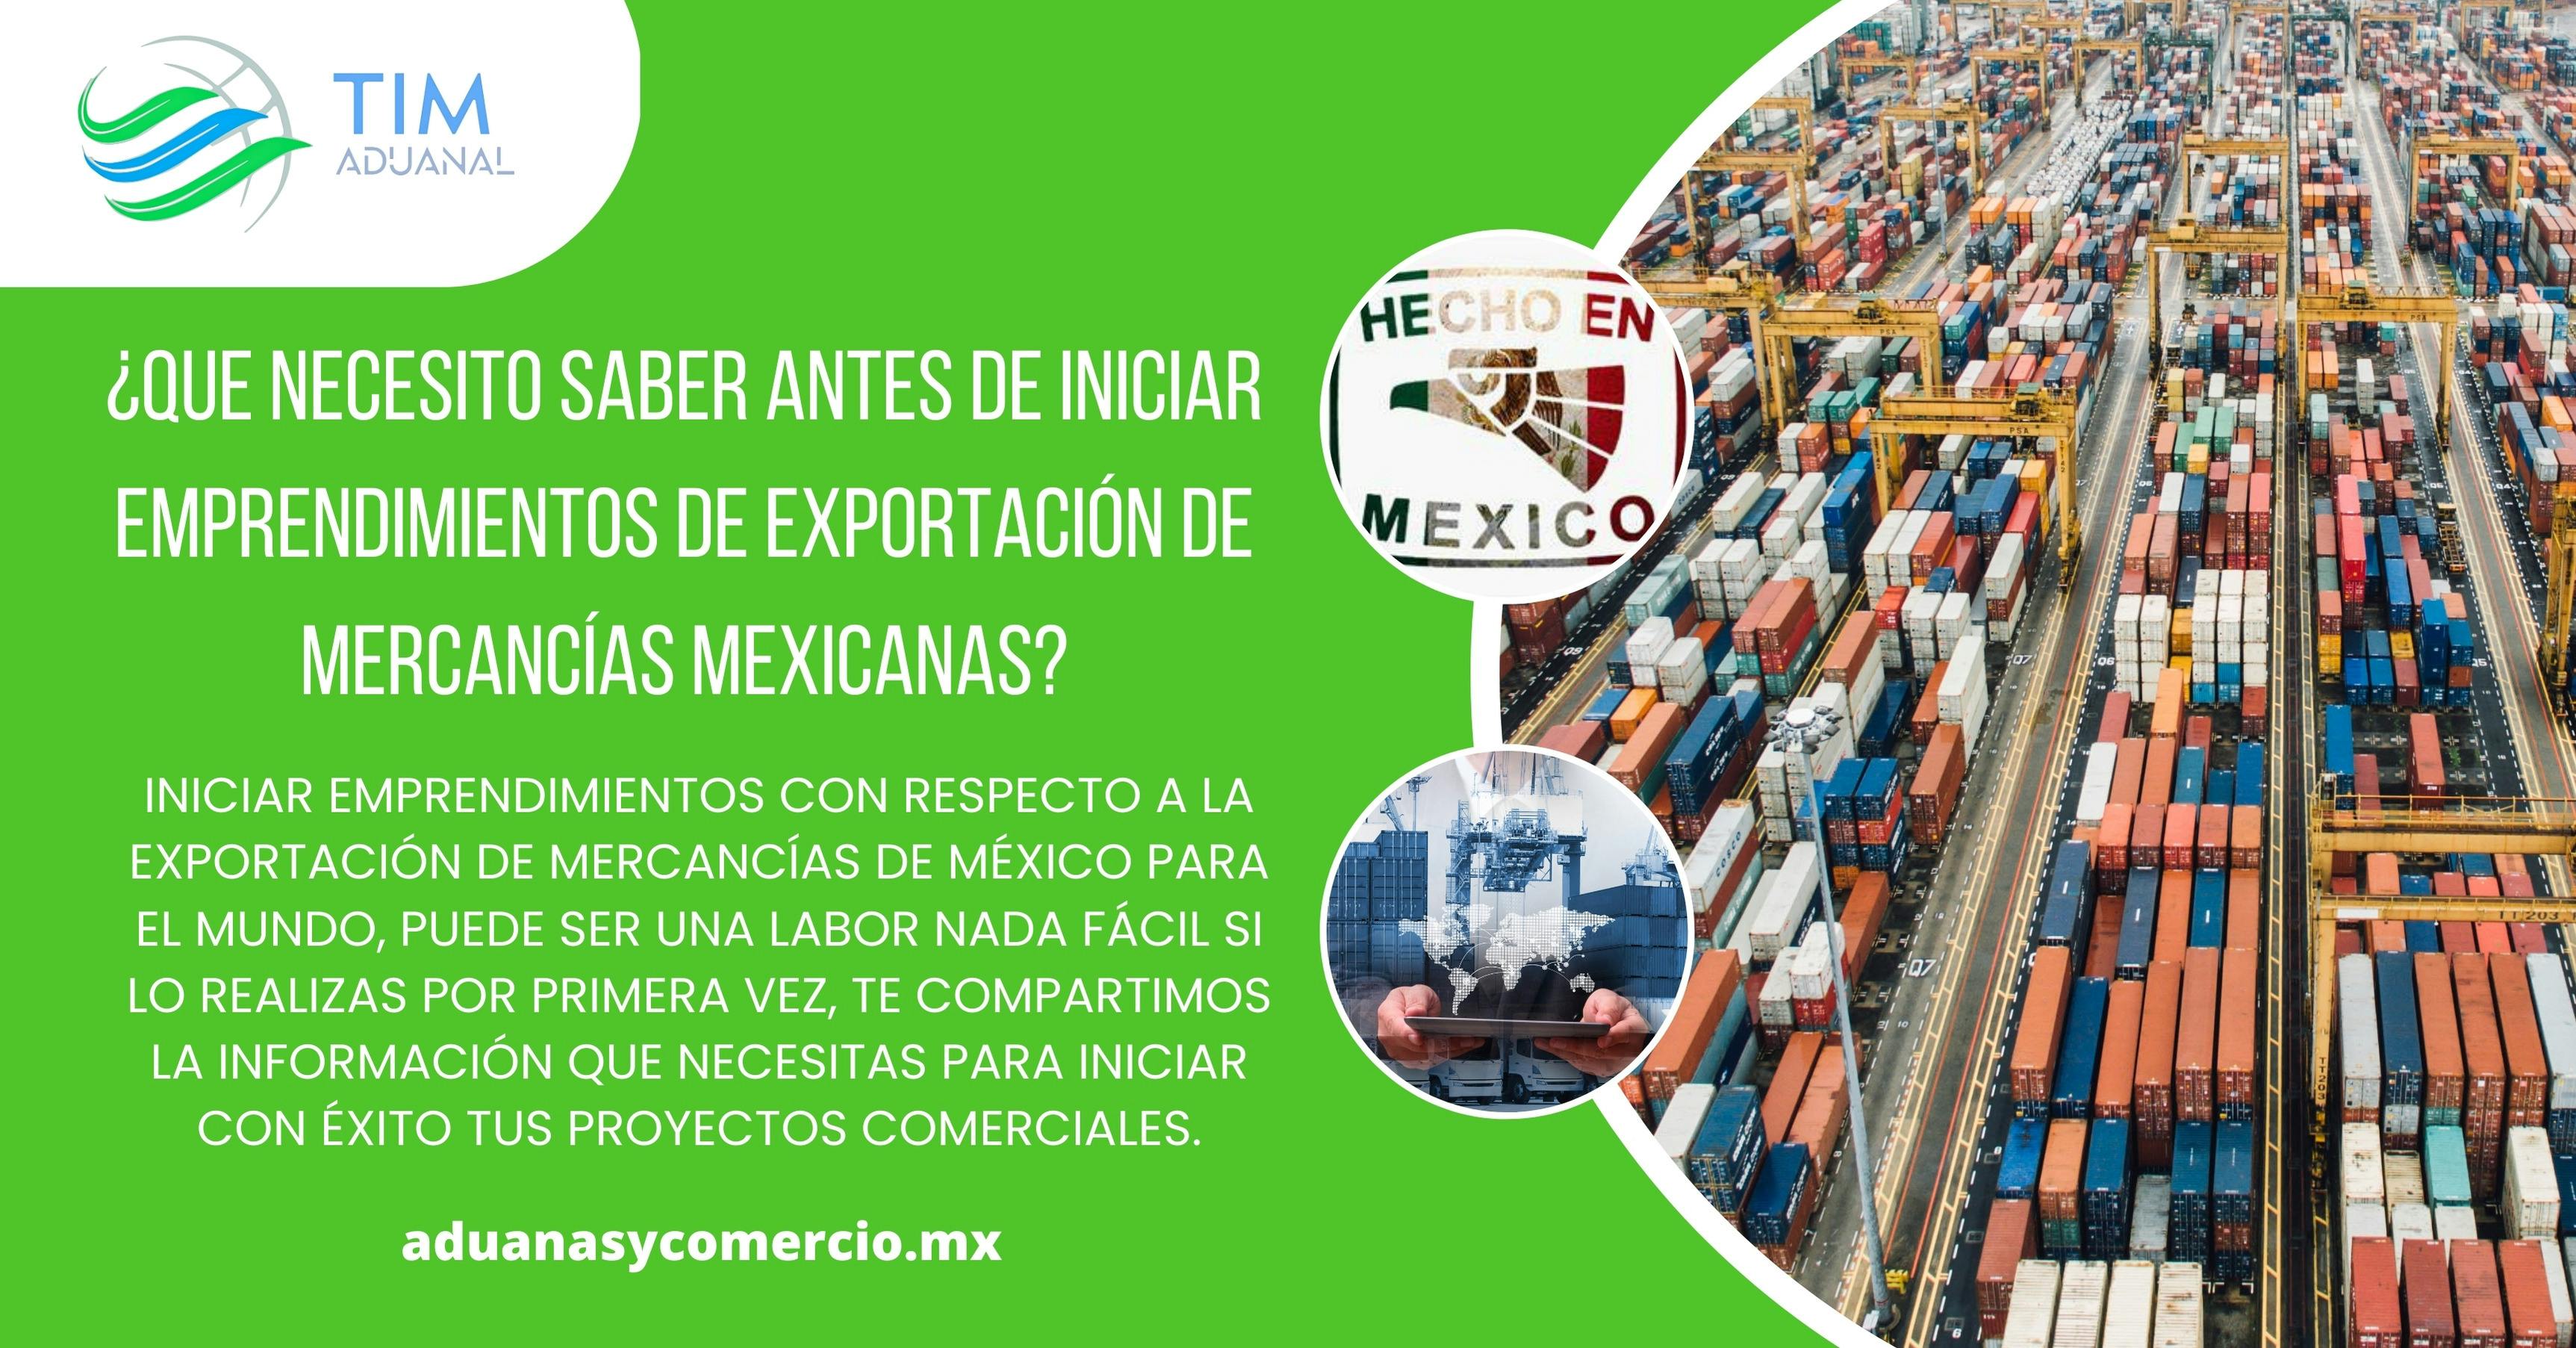 ¿Qué necesito saber antes de iniciar importaciones desde China a México?